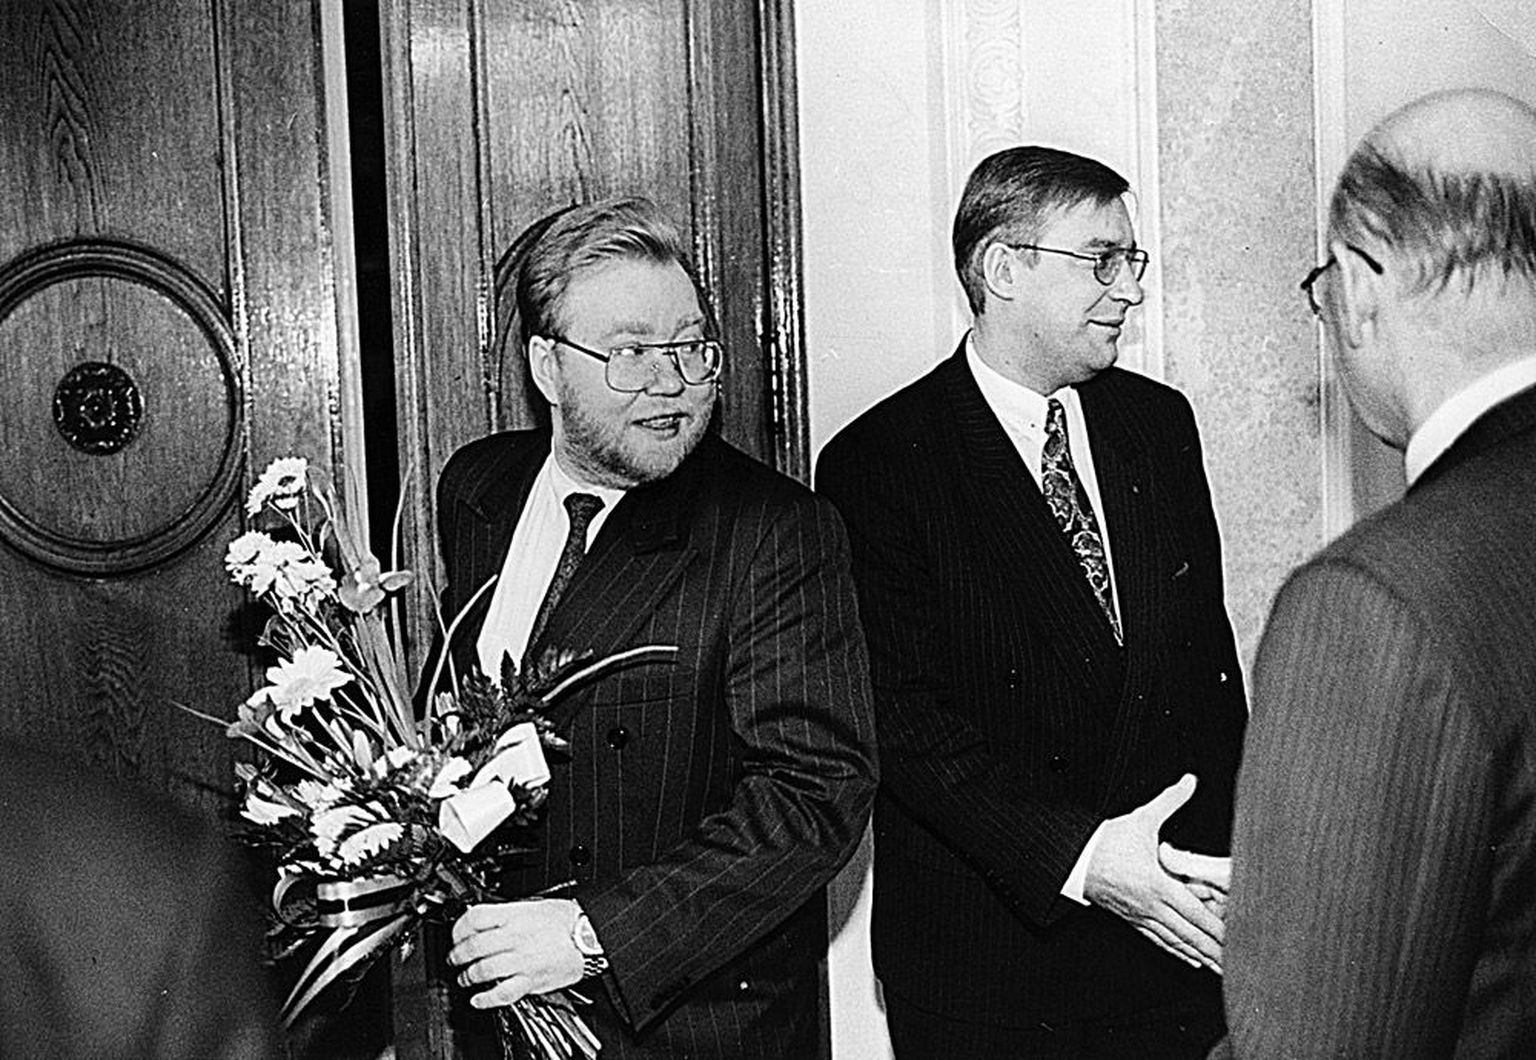 Laar jõudis esimest korda Eesti peaminister olla vaid kaks aastat. «Umbusalduse avaldamises pole midagi meeldivat ning ei saa kuidagi eitada teatavat pettumust ja kibestumist,» kirjutab Laar sellest oma raamatus. Pildil ametist lahkuvad peaminister Laar ja siseminister Heiki Arike Toompea lossis 8. novembril 1994.